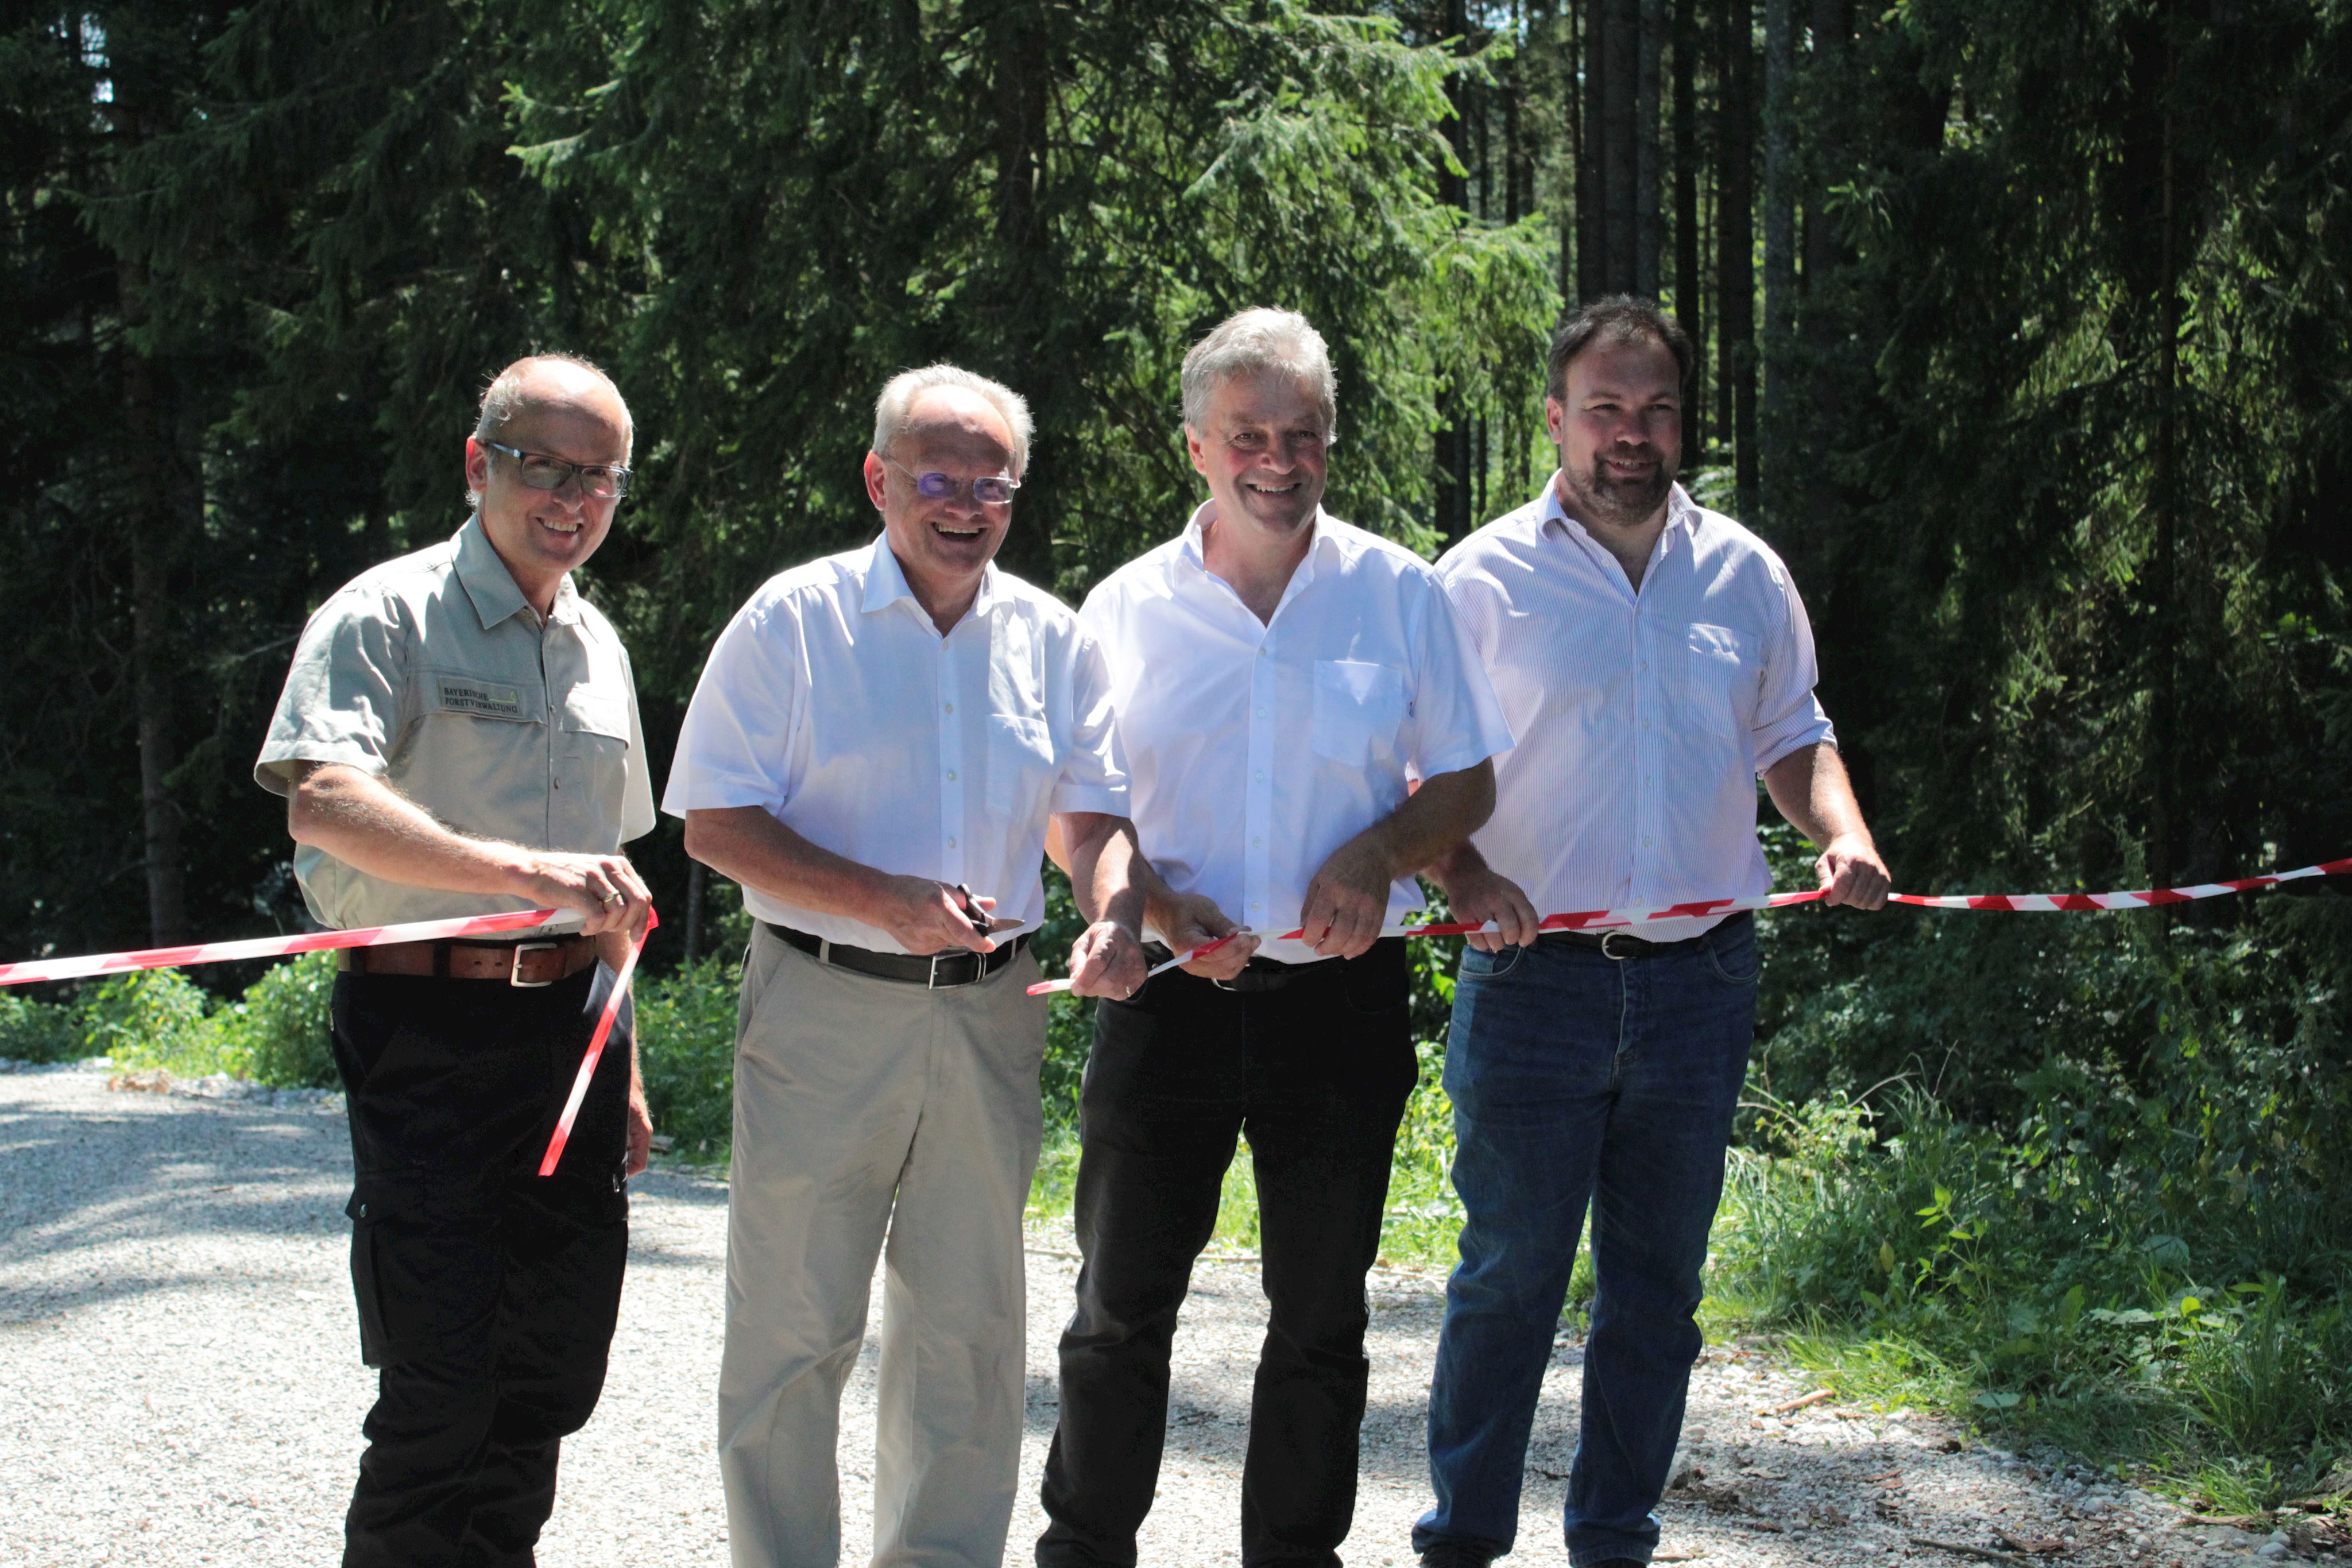 Waldnutzung und Naturschutz vereint: Bezirk Schwaben realisiert vorbildliches Projekt am Höllweg